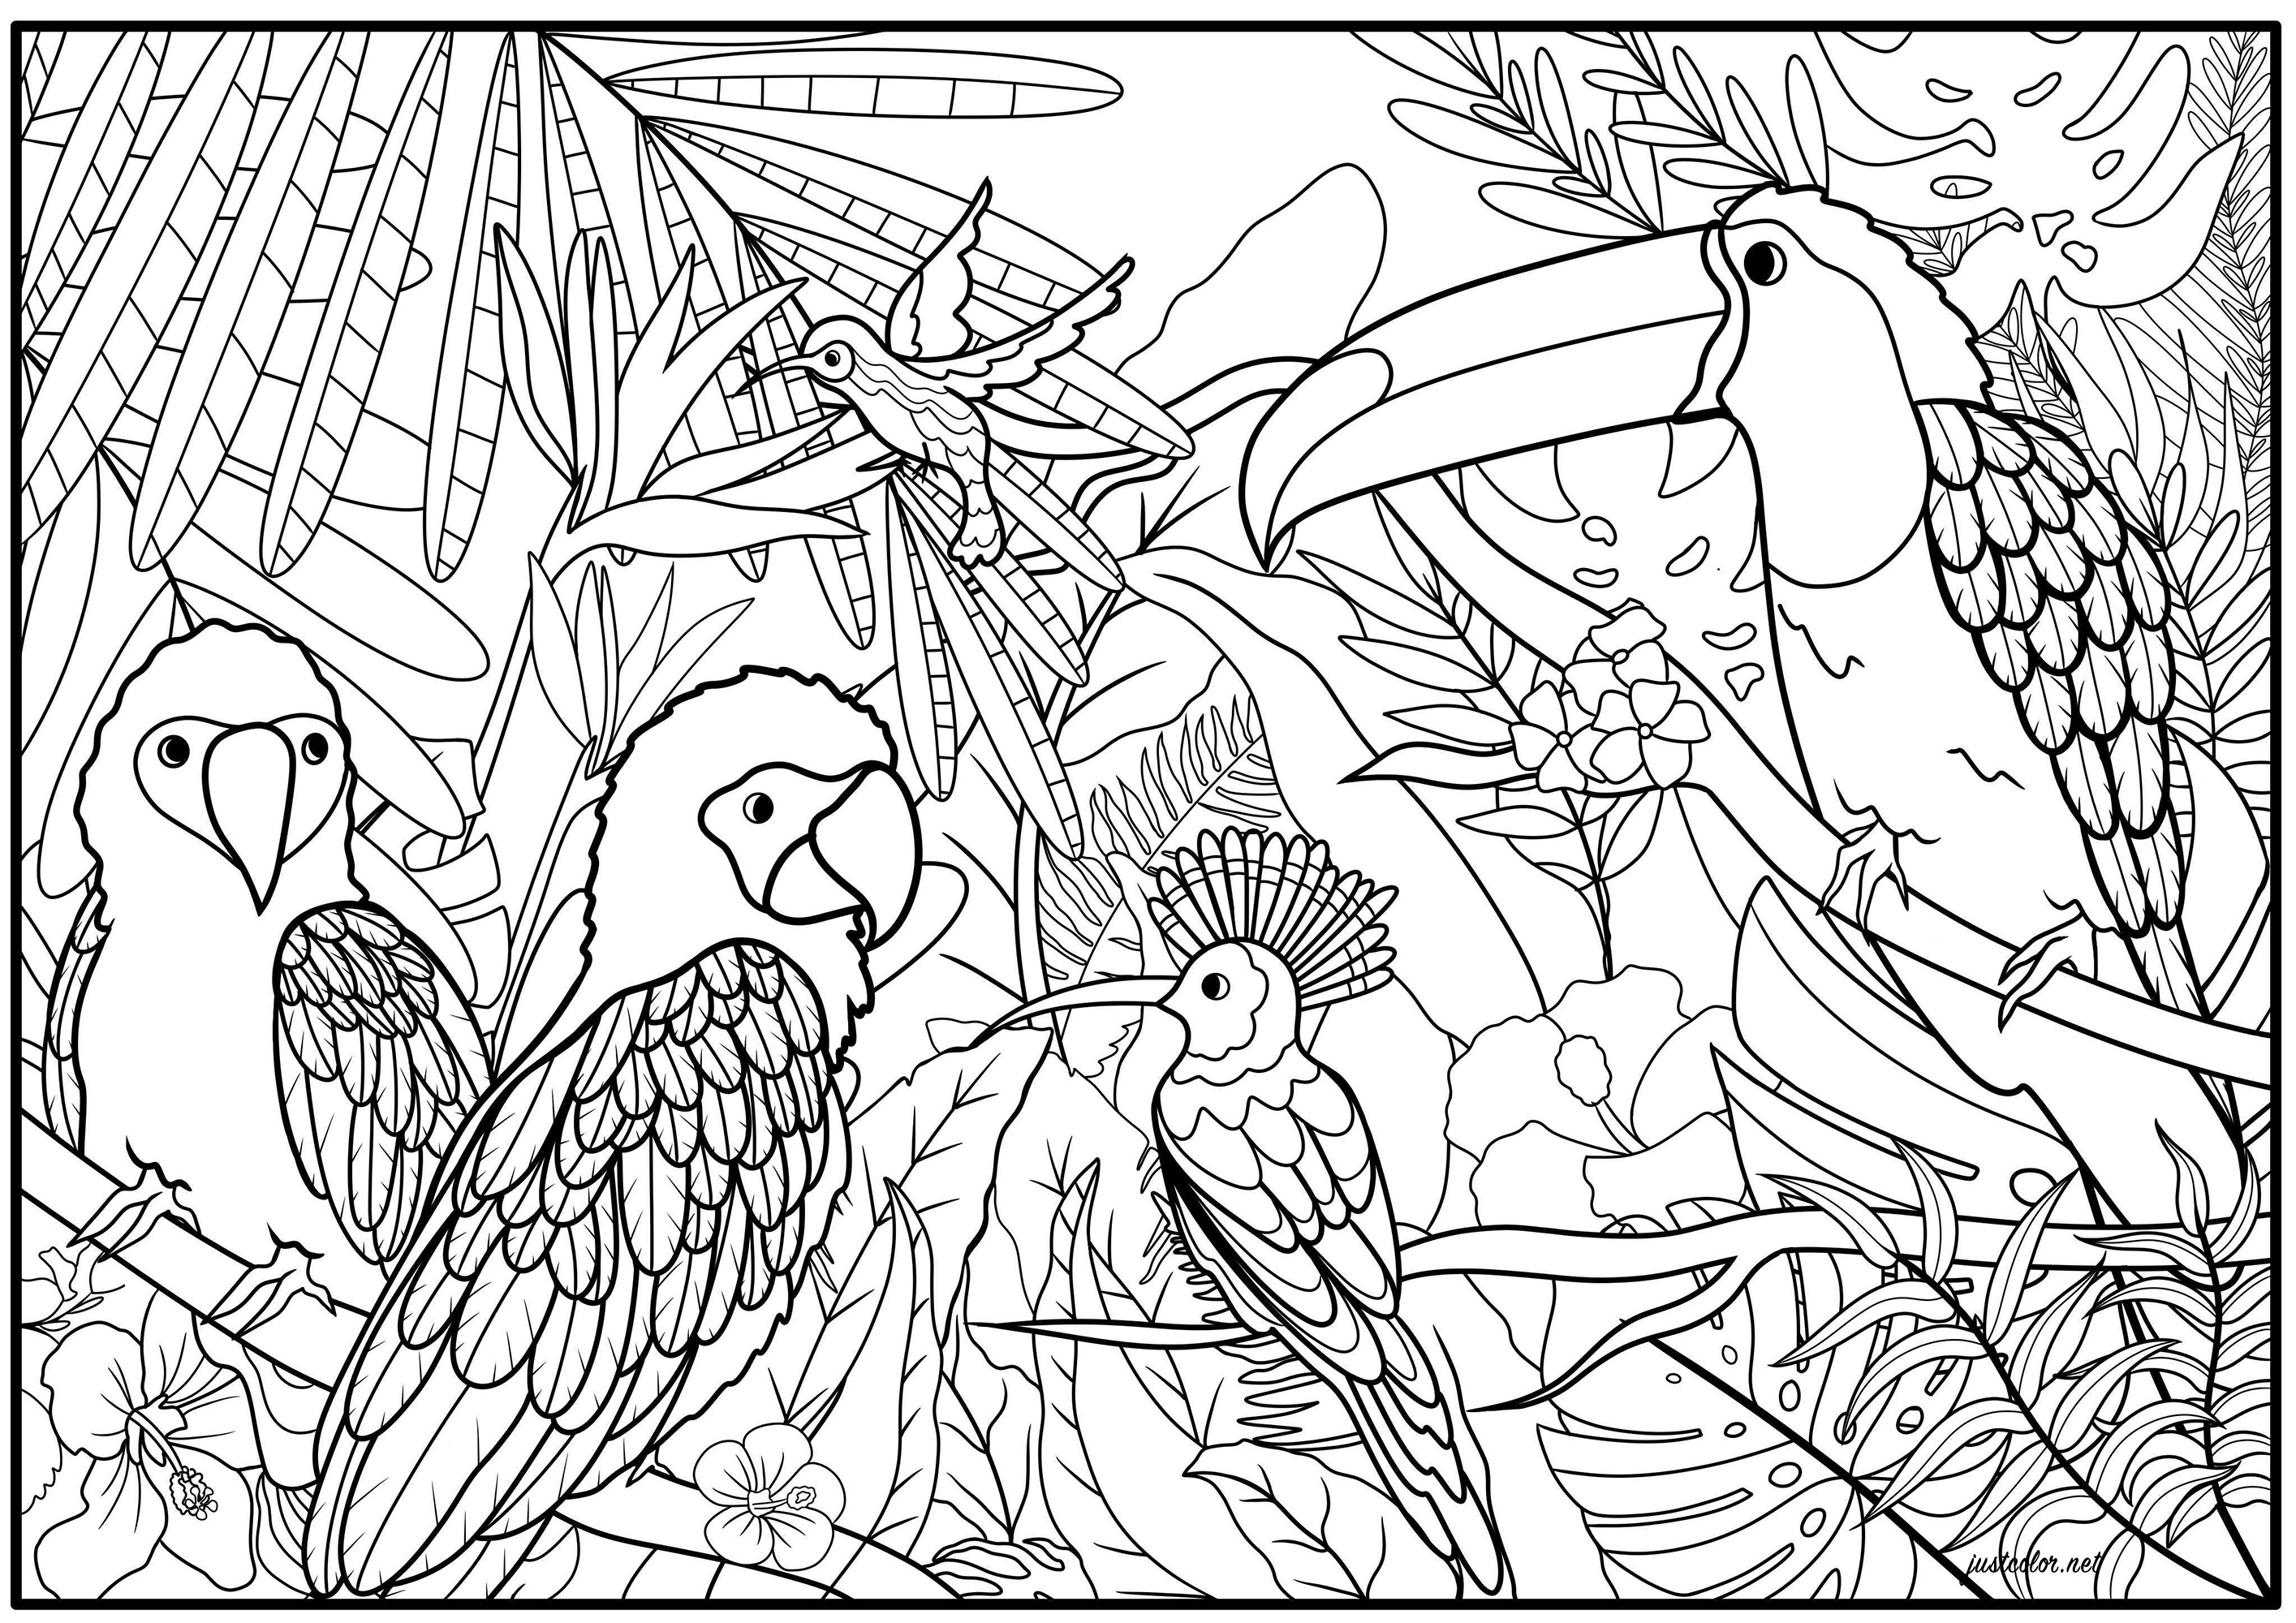 Conjunto de aves exóticas, como papagaios, gouras coroadas, beija-flor e tucano, no seu habitat natural, Artista : Océane D